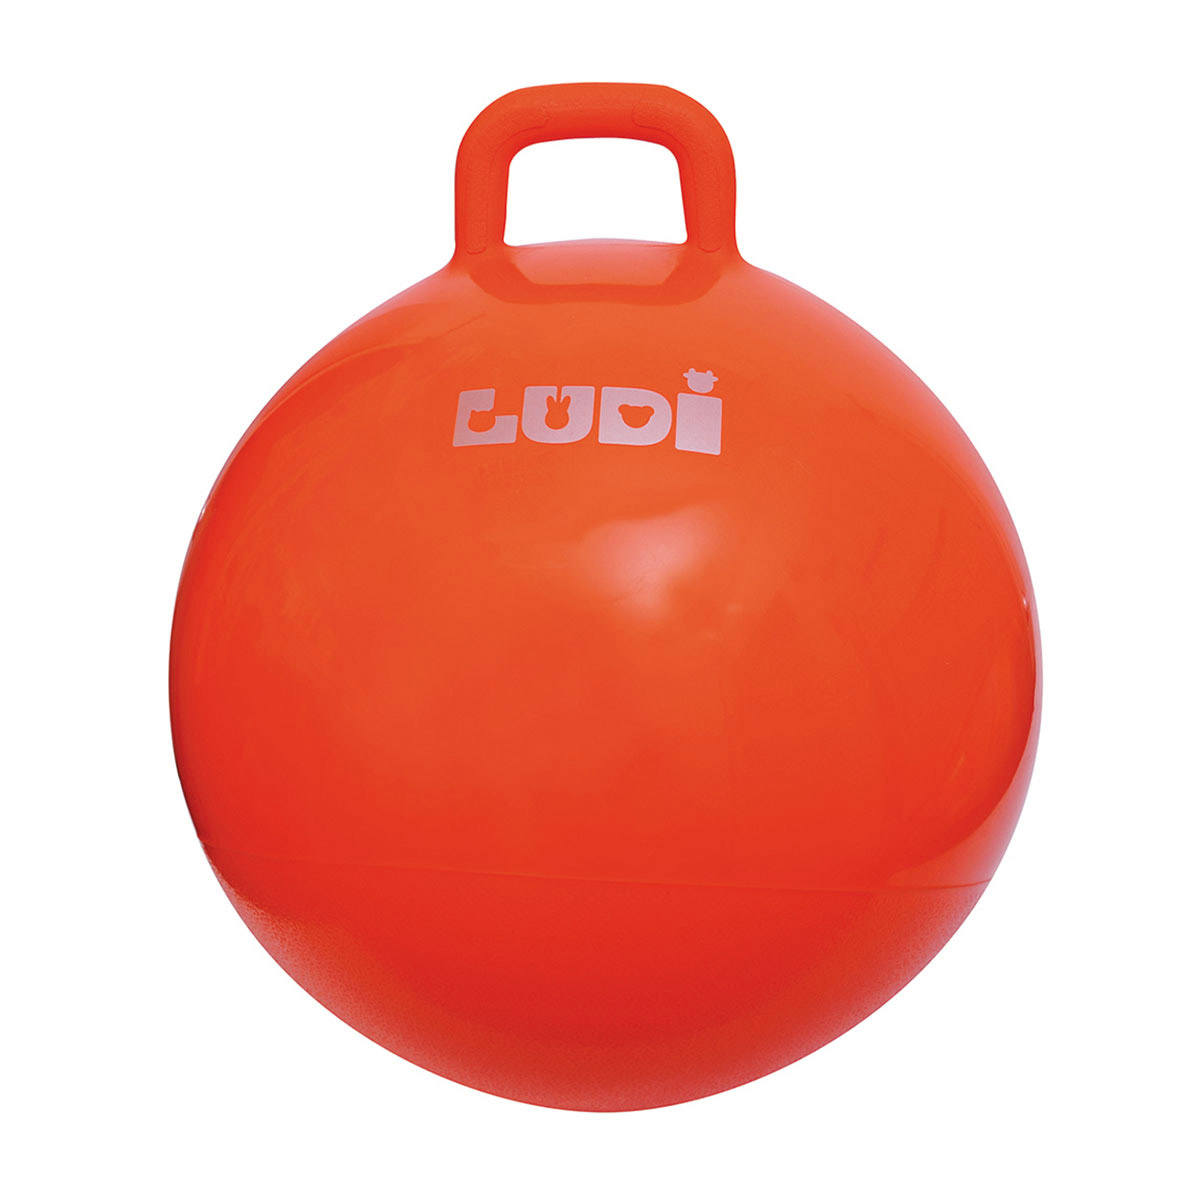 Ballon sauteur XXL 55 cm : Orange - Jeux et jouets Ludi - Avenue des Jeux